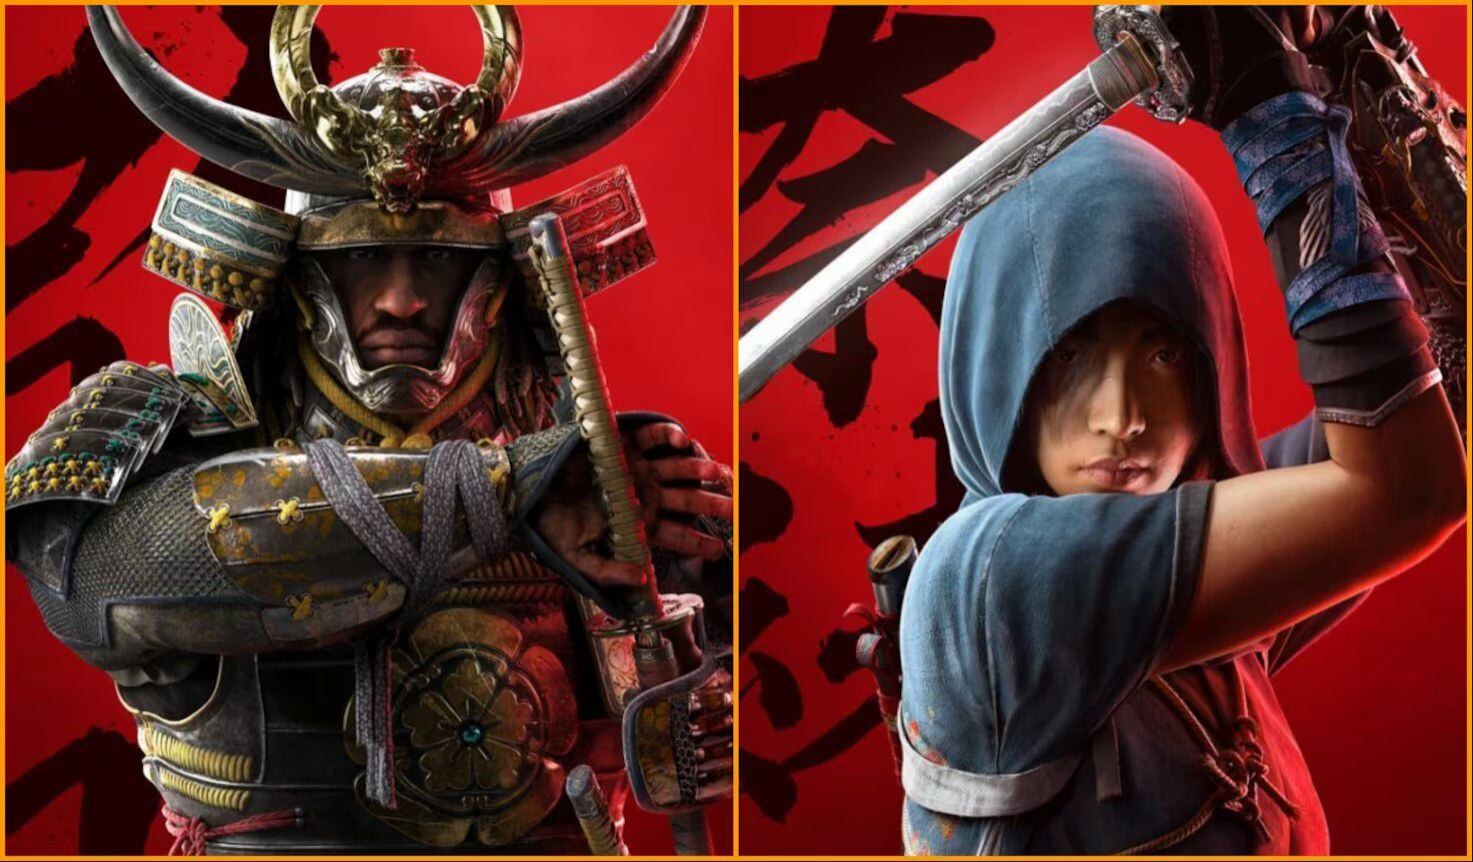 El videojuego será protagonizado por dos personajes: Naoe, una shinobi japonesa, y Yasuke, un samurái de origen africano.